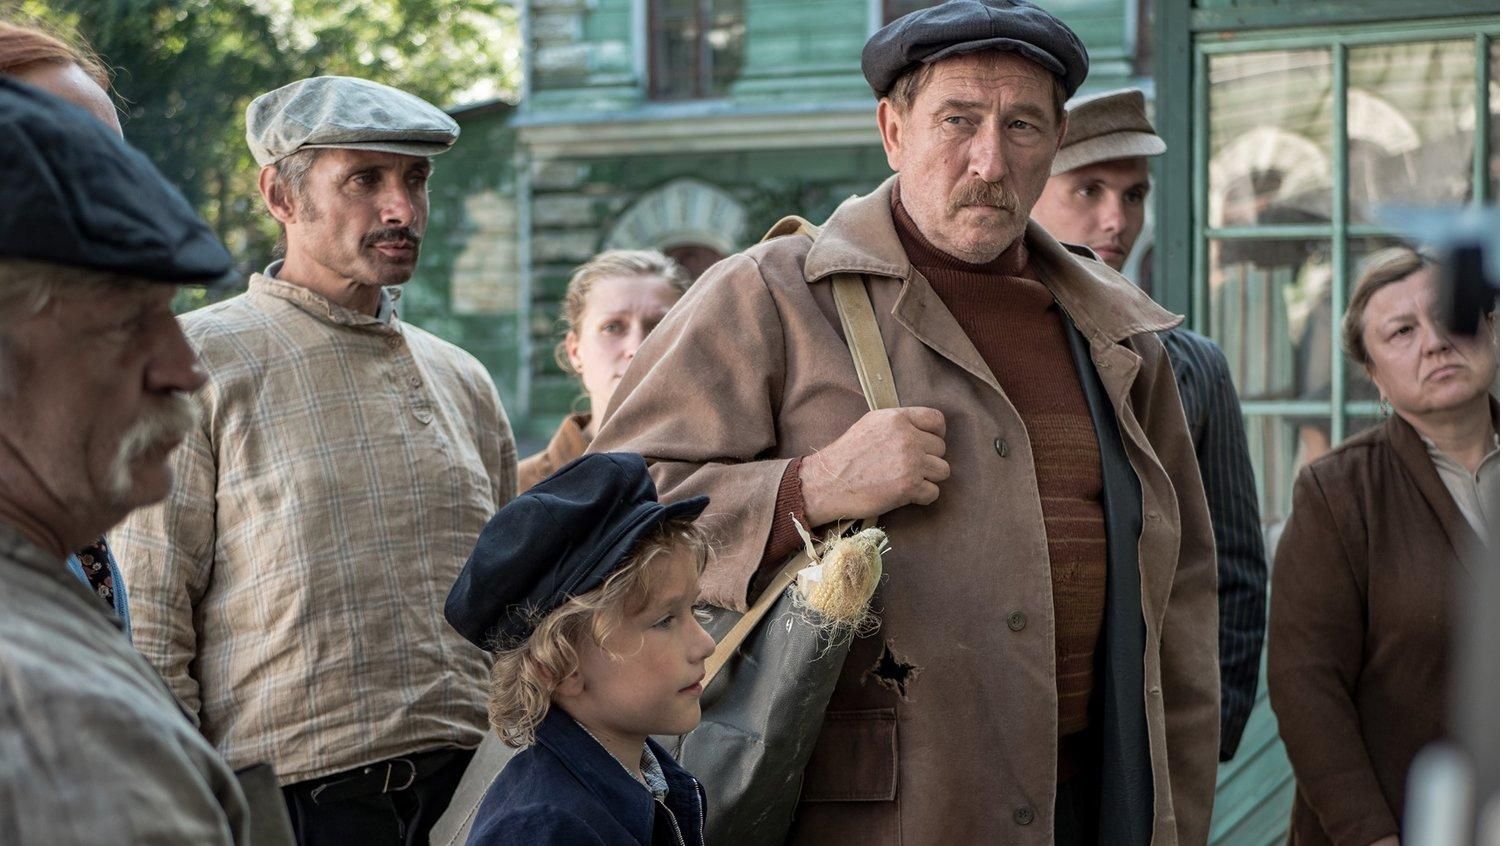 О довоенной жизни Мариуполя  фильм "Почему я жив" с Ждановым получил награду в Каннах - Кино